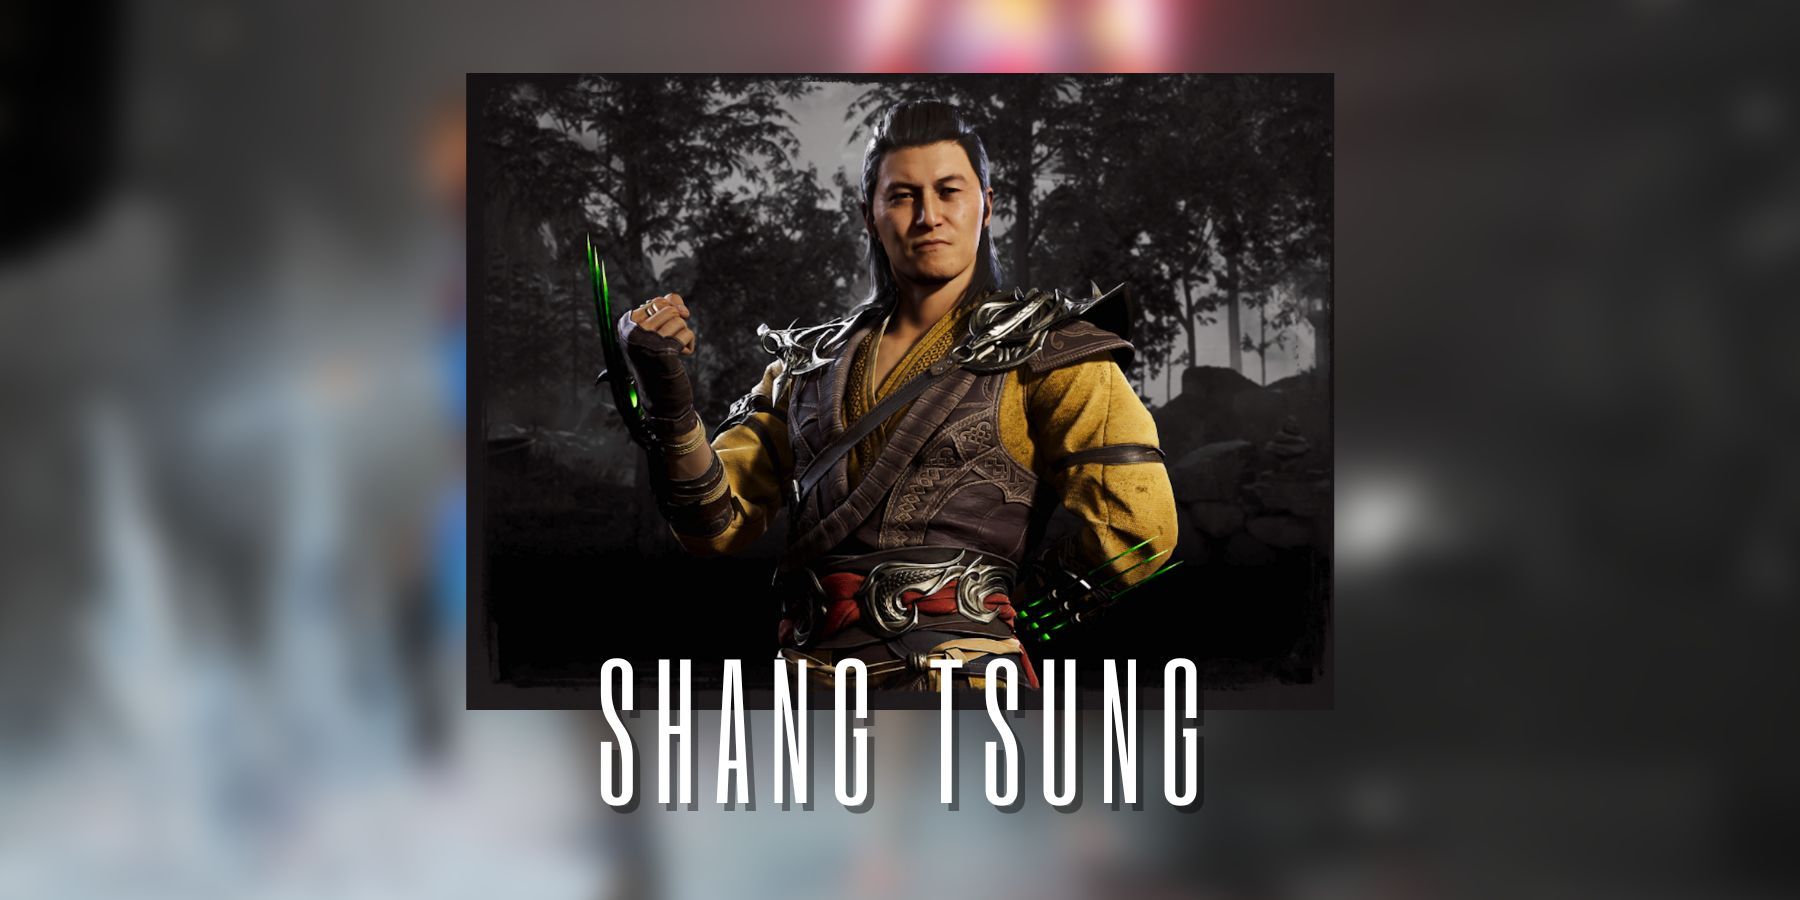 Buy Shang Tsung